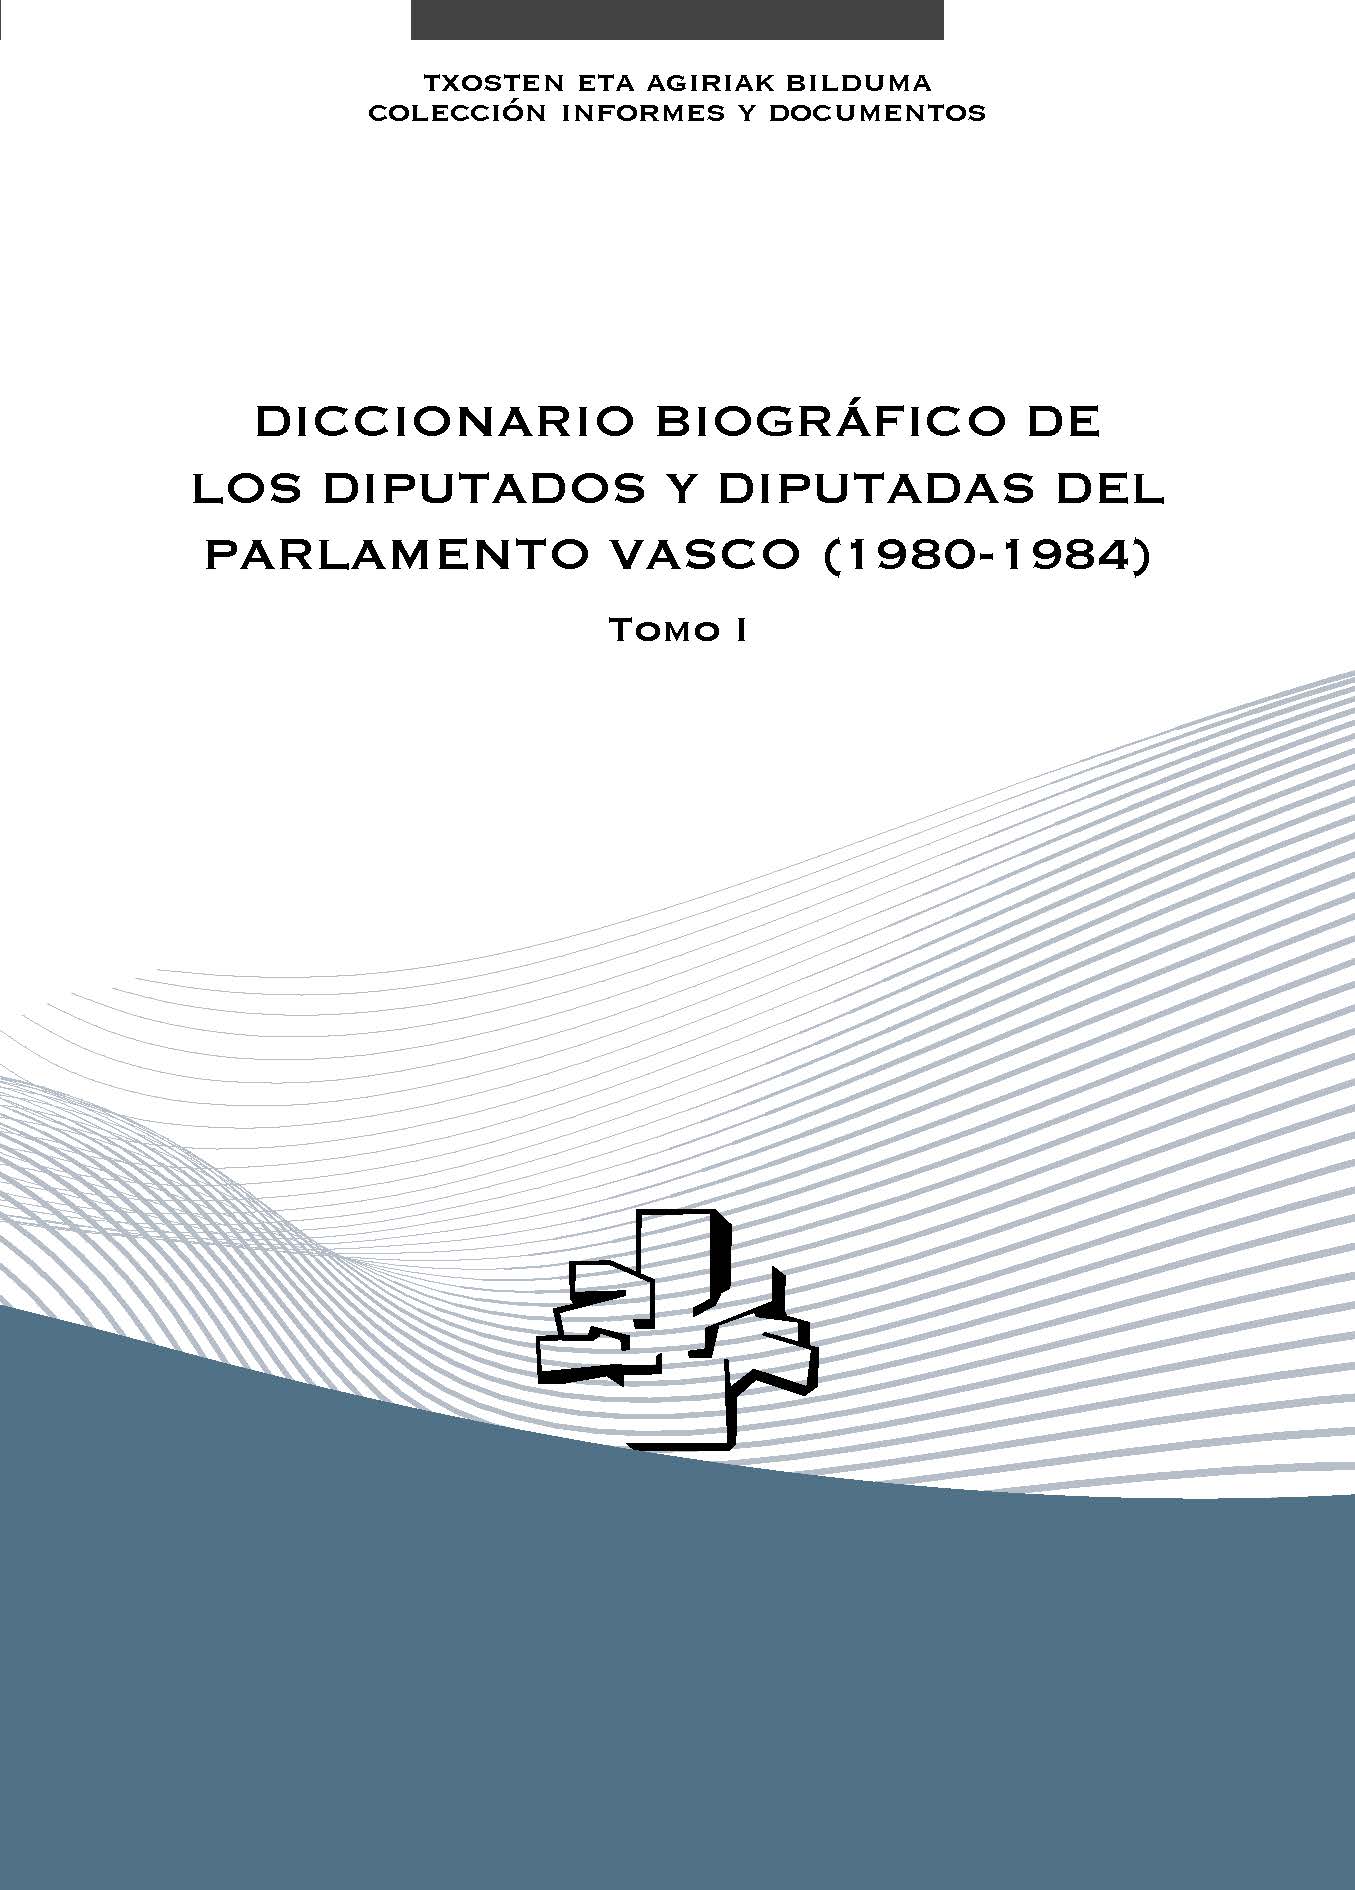 Imagen de portada del libro Diccionario biográfico de los diputados y diputadas del Parlamento Vasco (1980-1984)